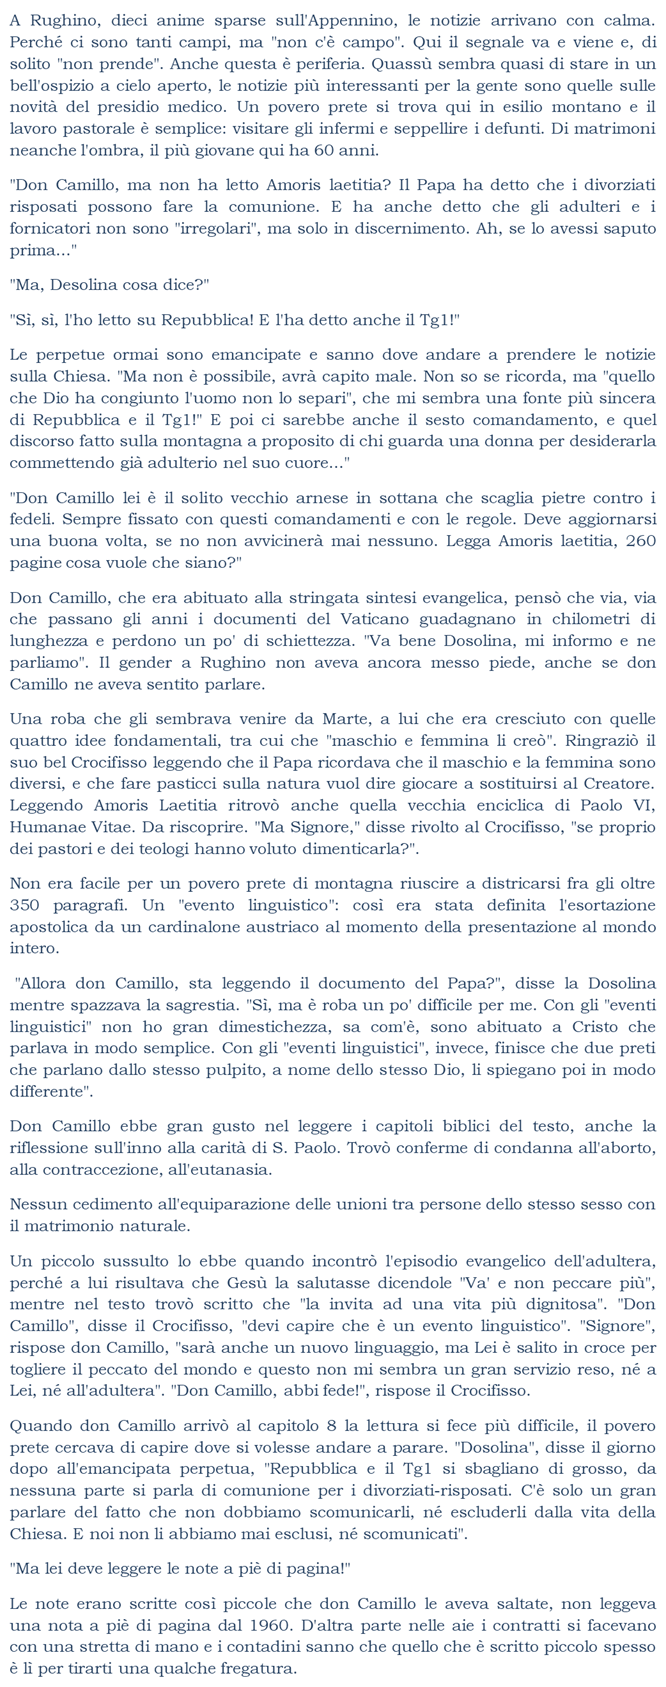 "Don Camillo, ma non ha letto Amoris laetitia? Il Papa ha detto che i divorziati risposati possono fare la comunione... 